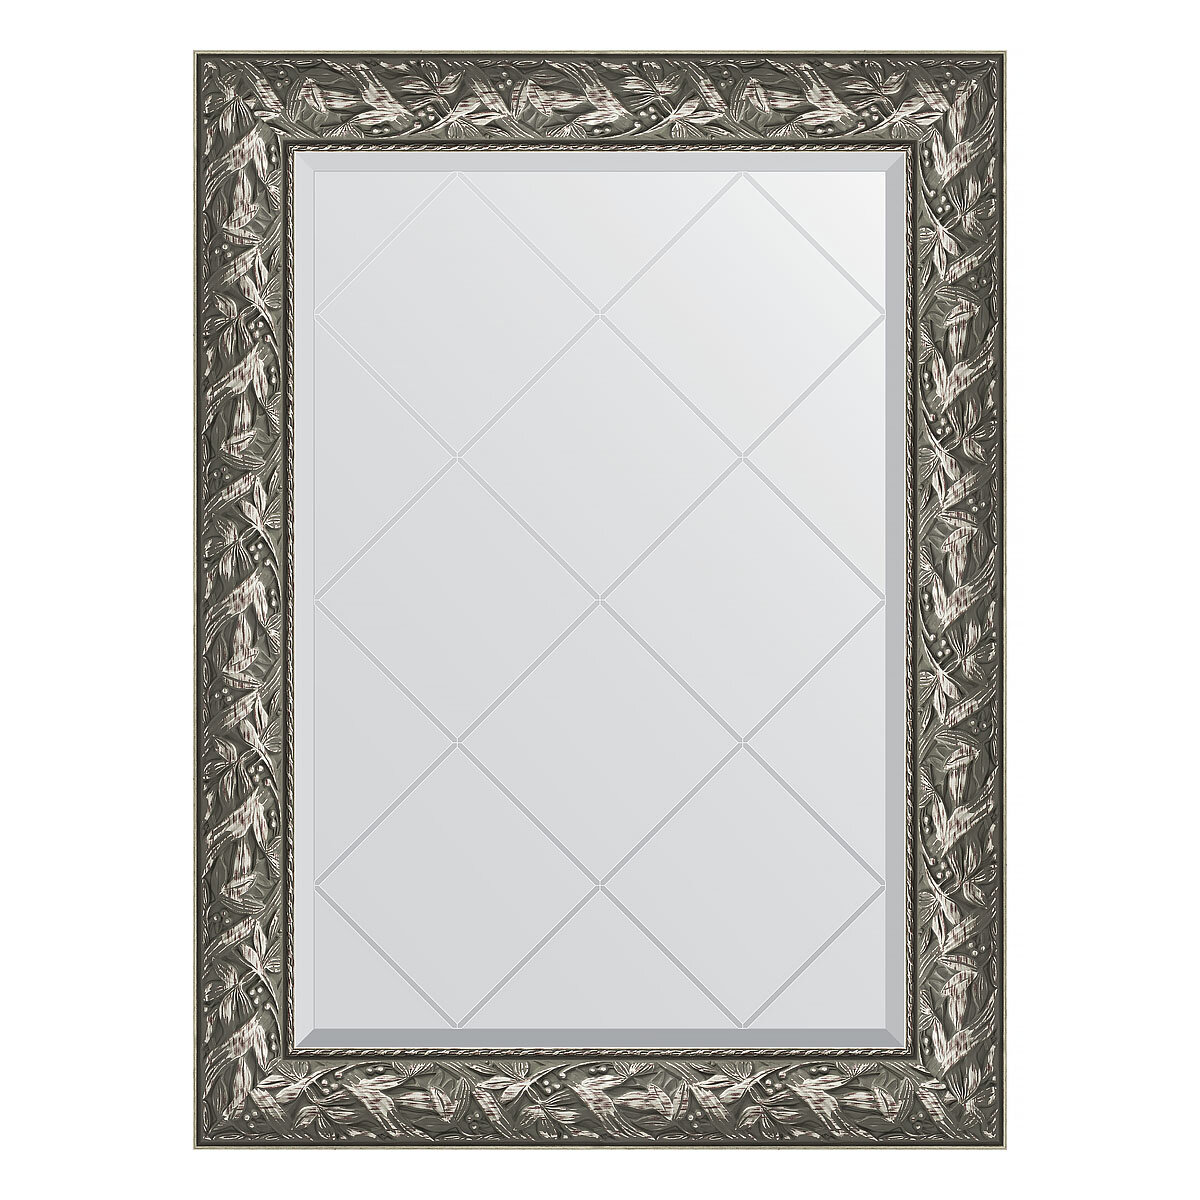 Зеркало настенное с гравировкой EVOFORM в багетной раме Византия серебро, 79х106 см, для гостиной, прихожей, спальни и ванной комнаты, BY 4200